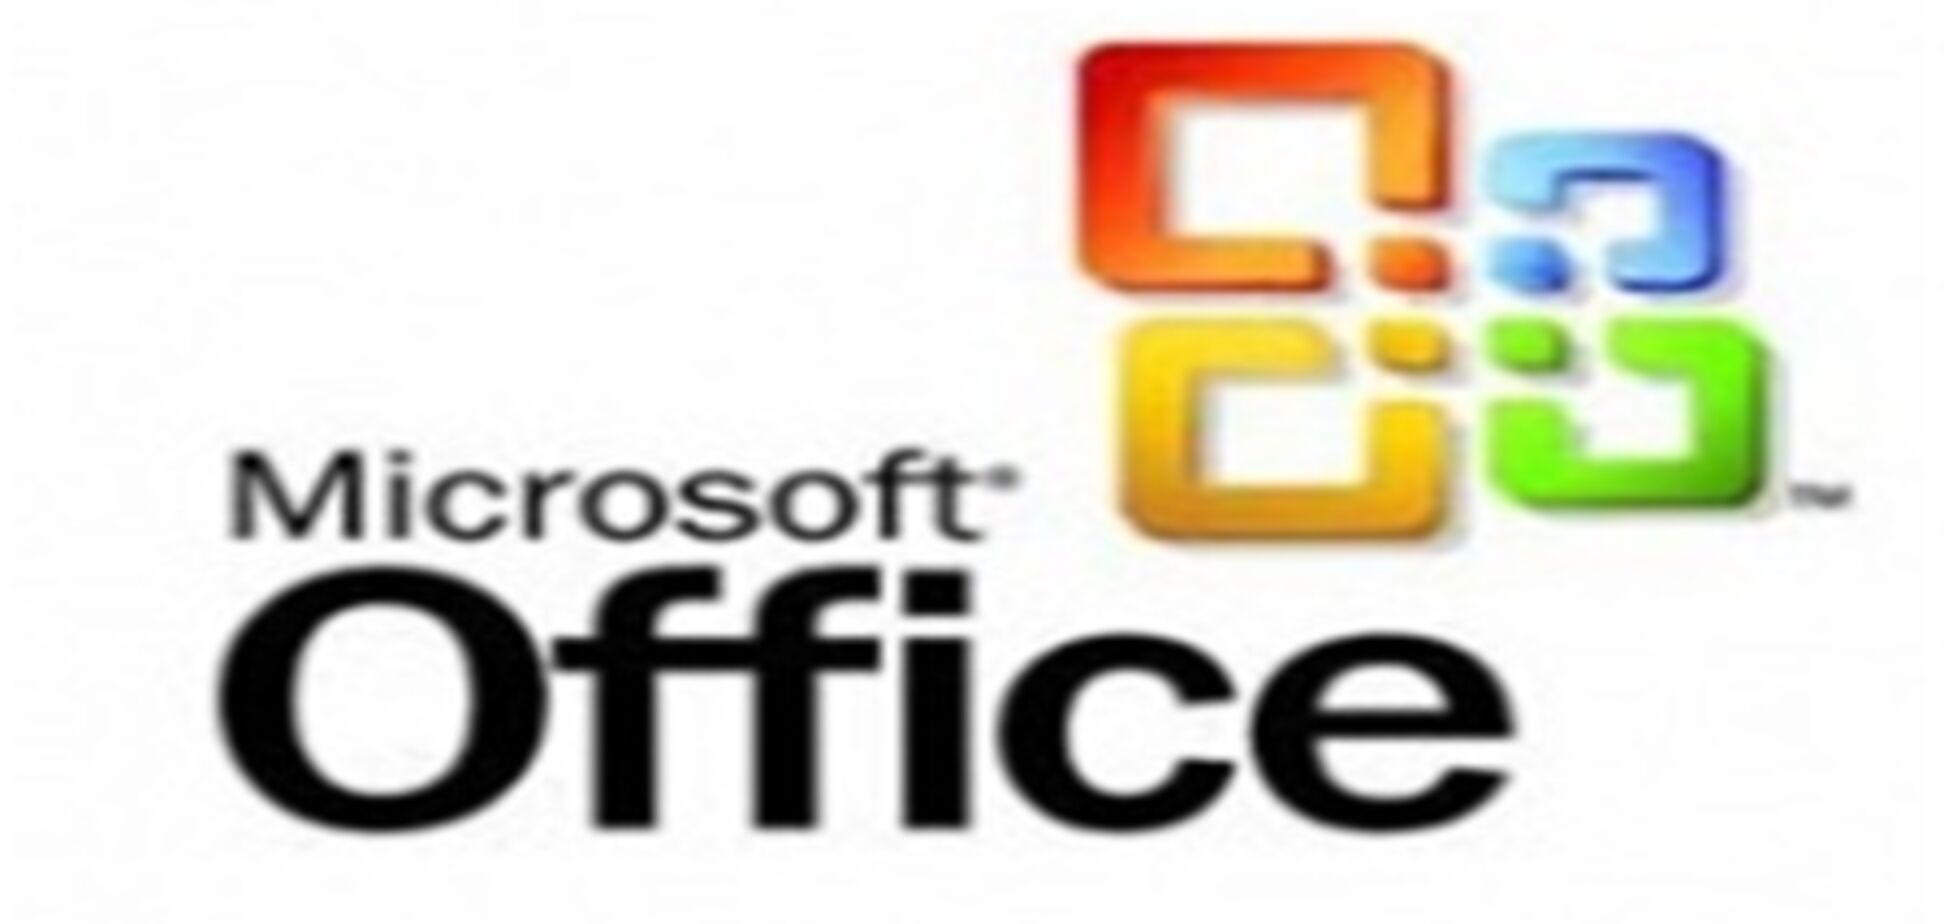 Microsoft Office 2010 выйдет в июне 2010 года